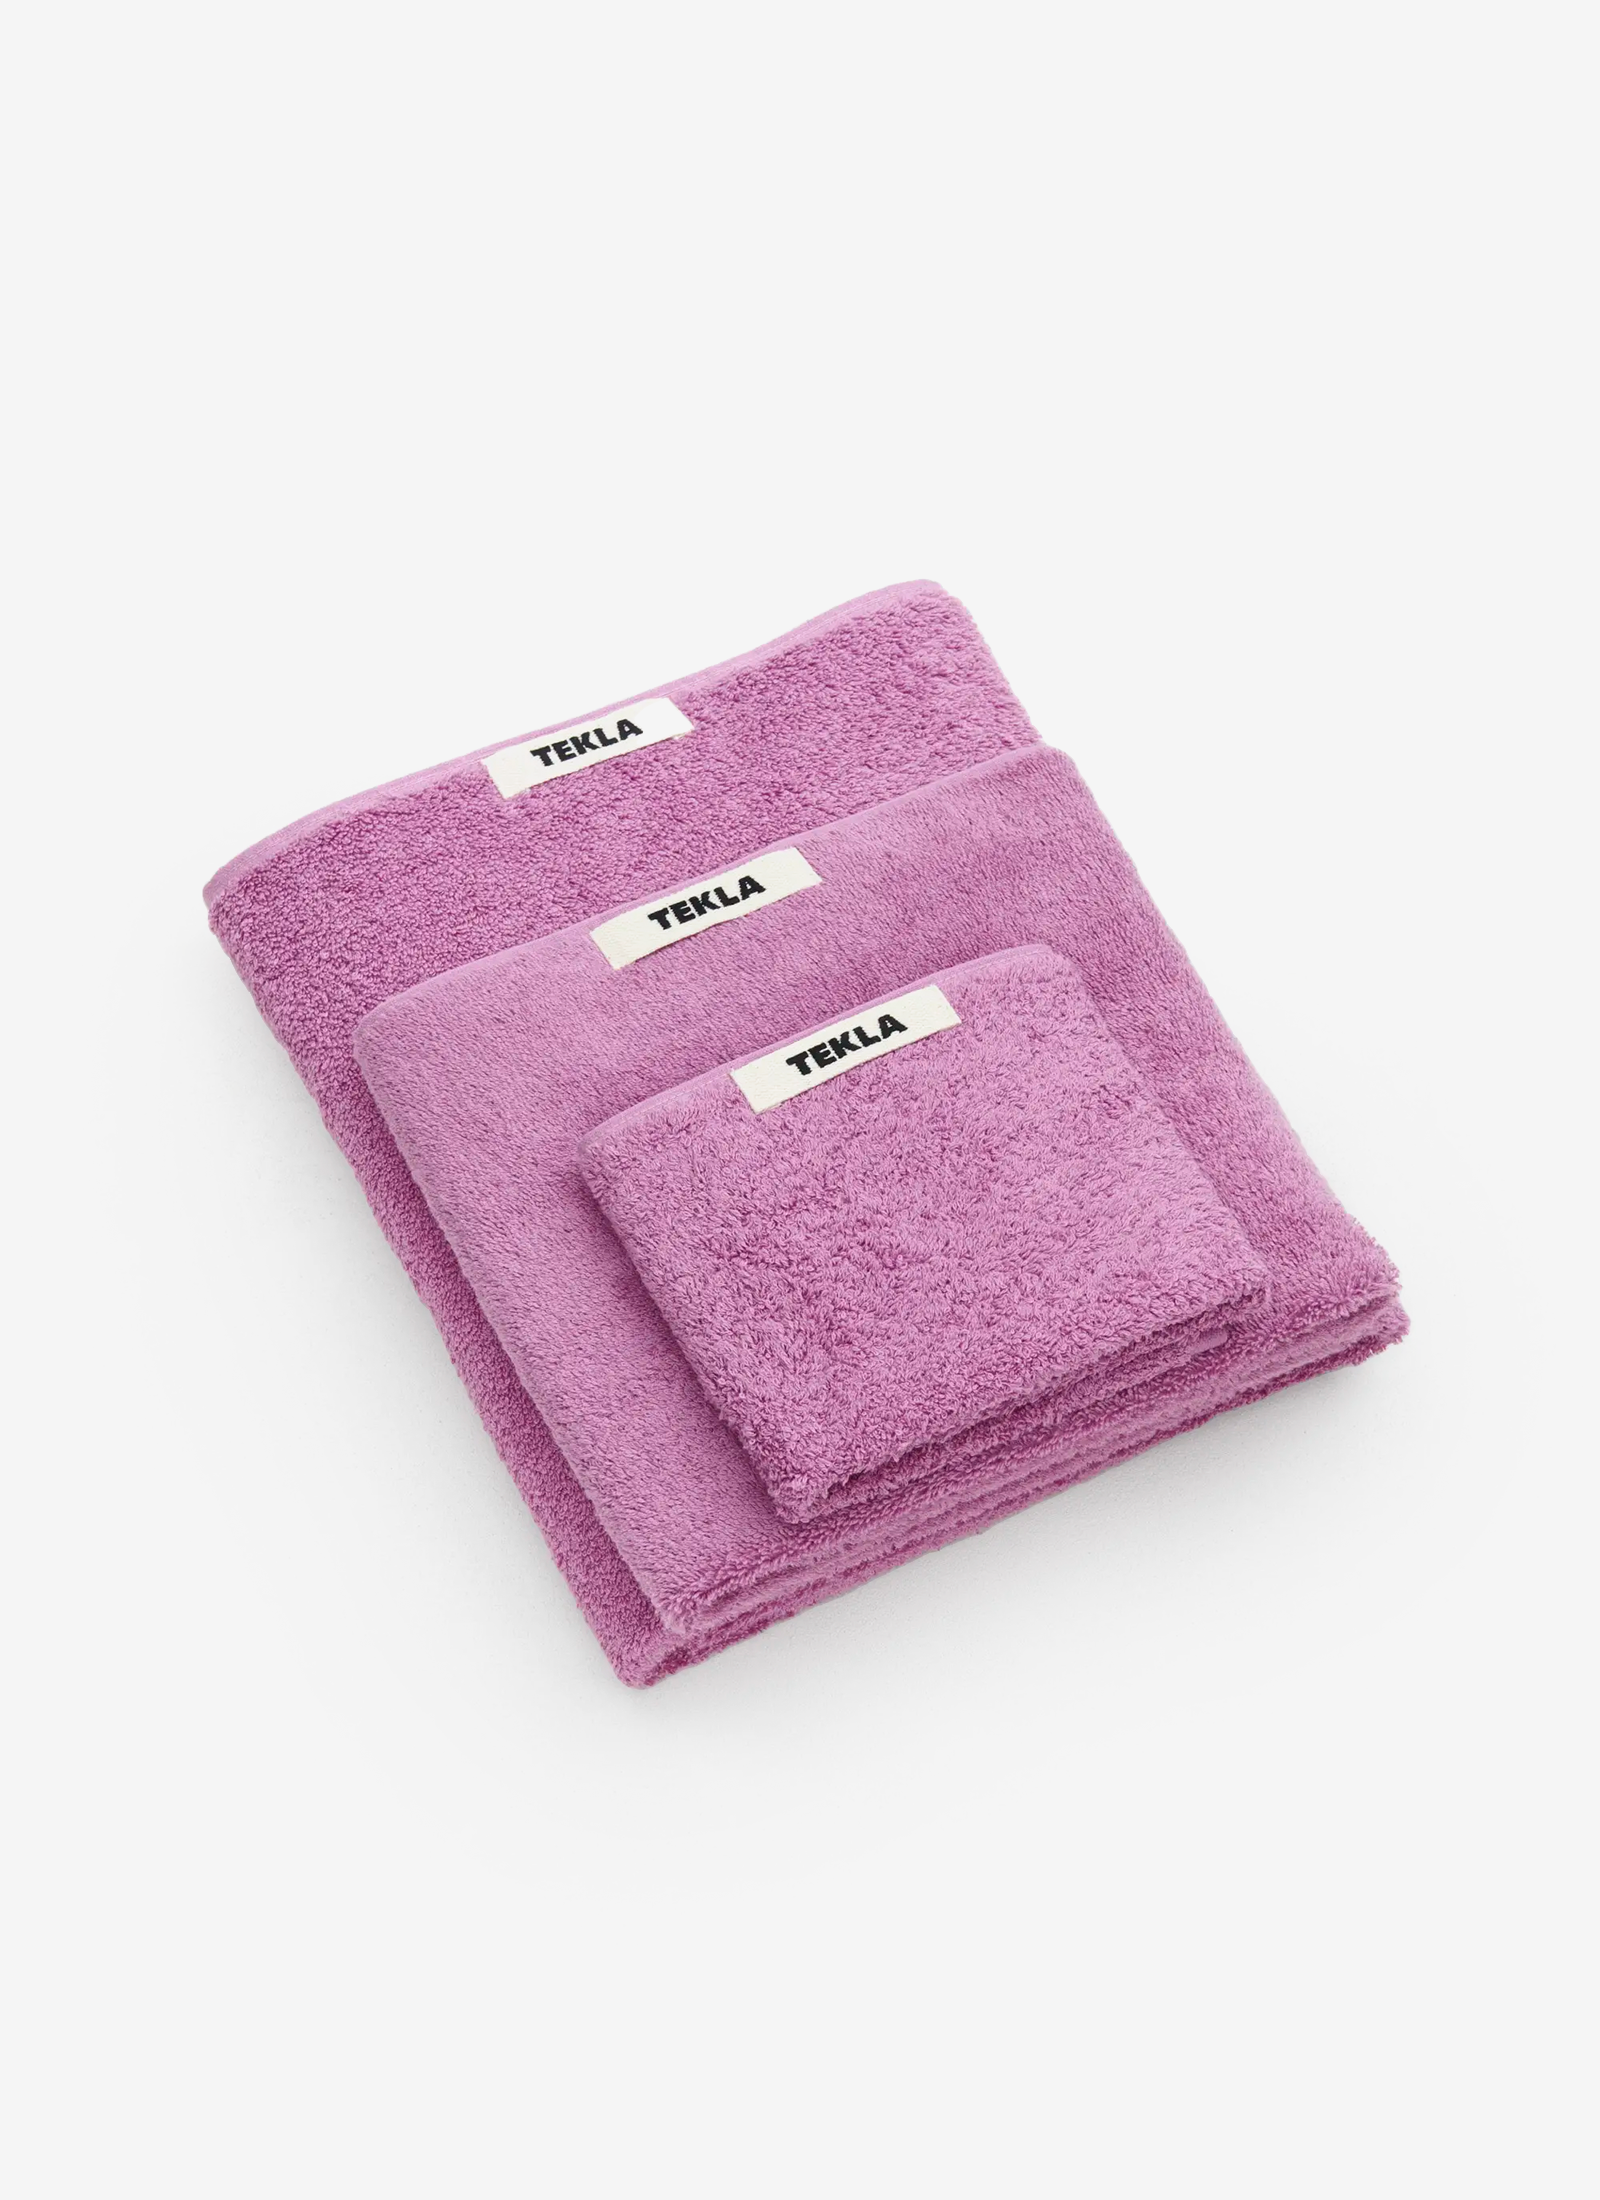 Magenta Towels - 3pc Set